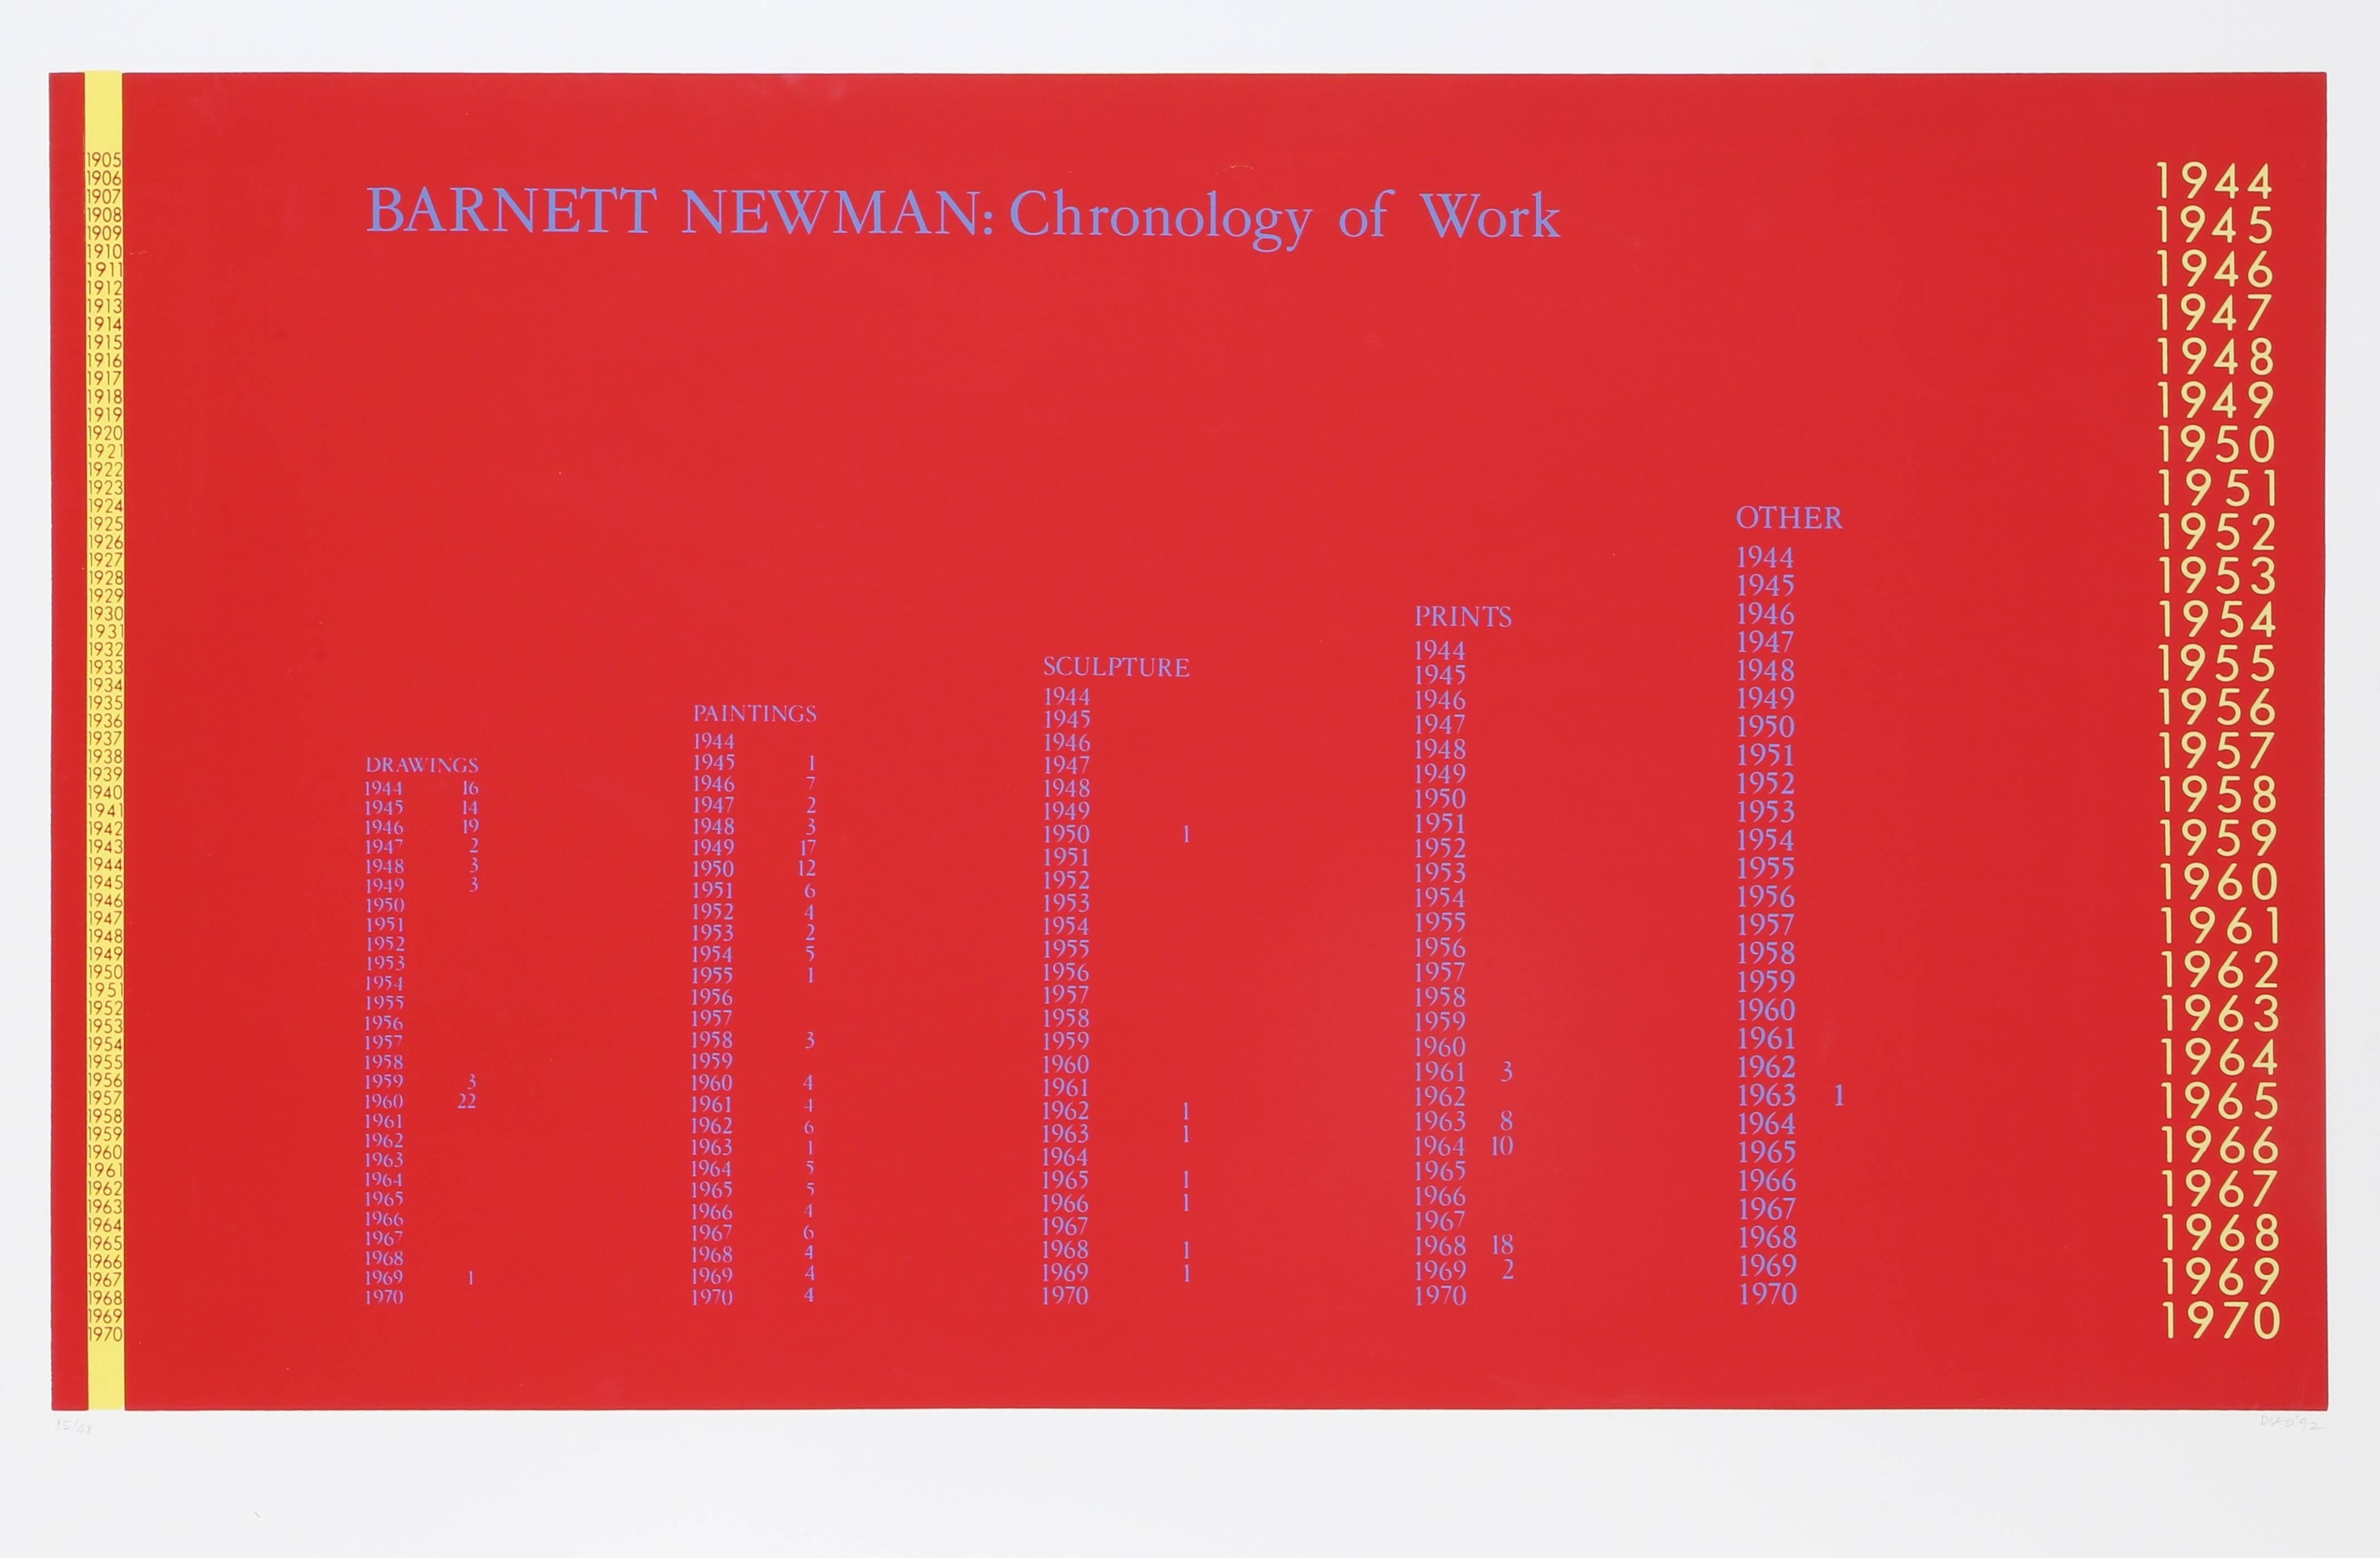 Künstler: David Diao, chinesisch-amerikanischer Künstler (1943-)
Titel: Barnett Newman Chronologie der Arbeiten
Jahr: 1992
Medium: Siebdruck, signiert und nummeriert mit Bleistift
Bild: 22 x 38 Zoll
Größe: 30  x 42 in. (76.2  x 106.68 cm)